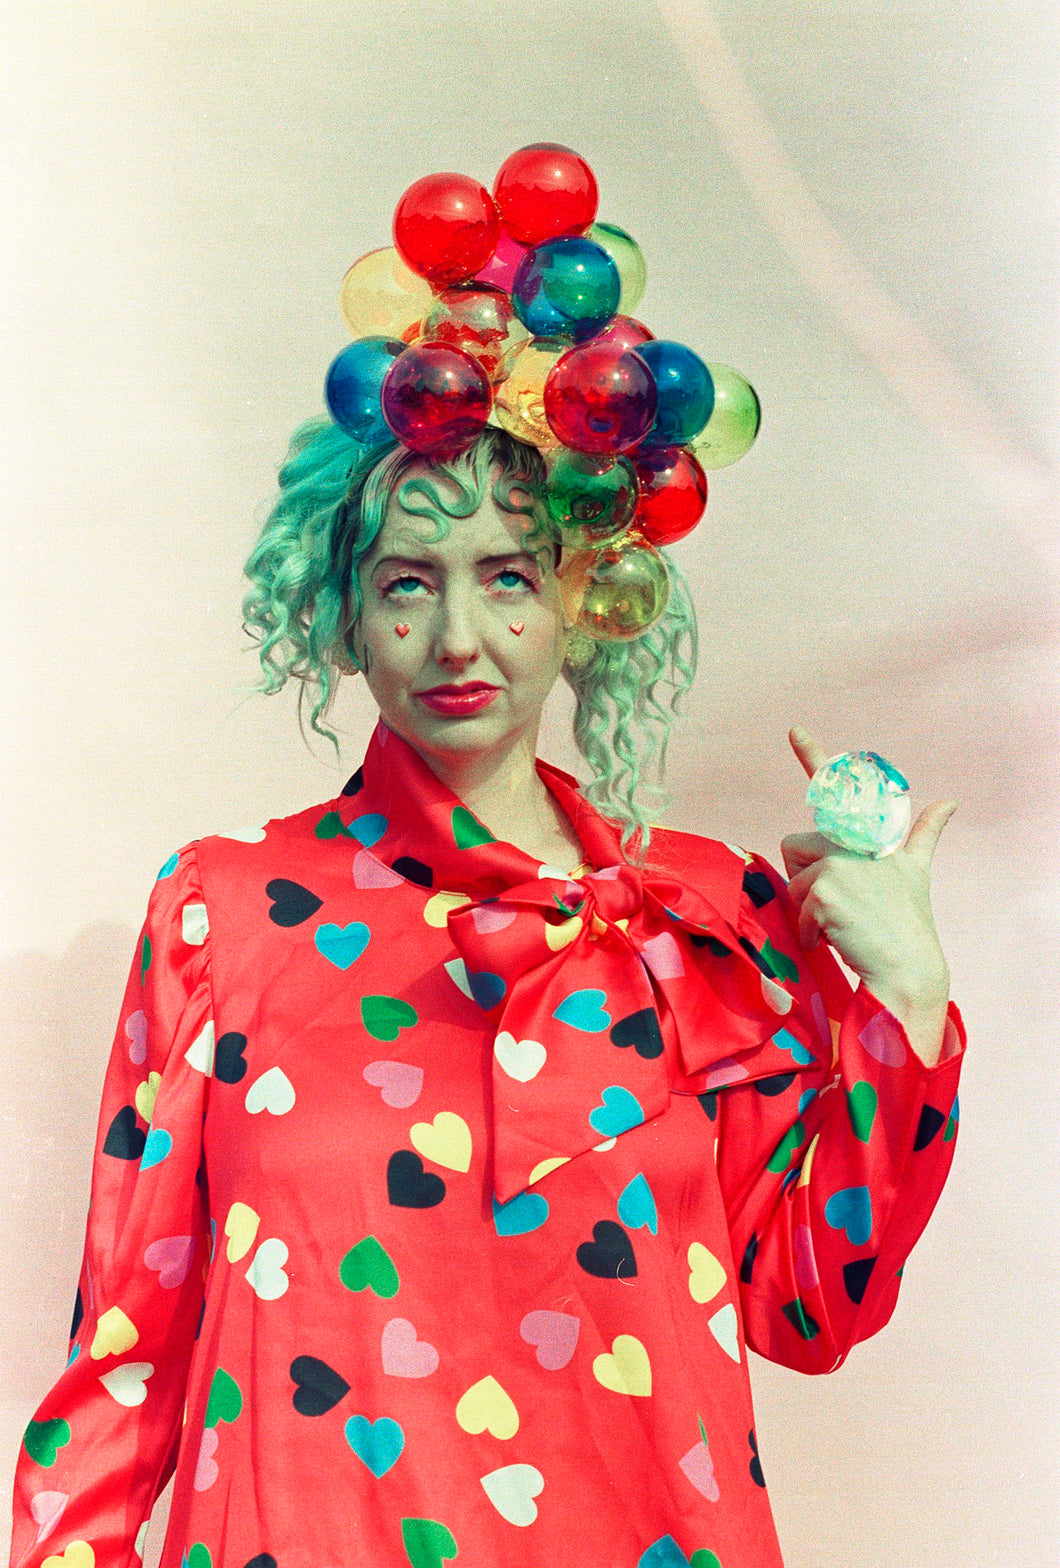 Juggling Balls / Bubbles / Clown Funfair Headpiece